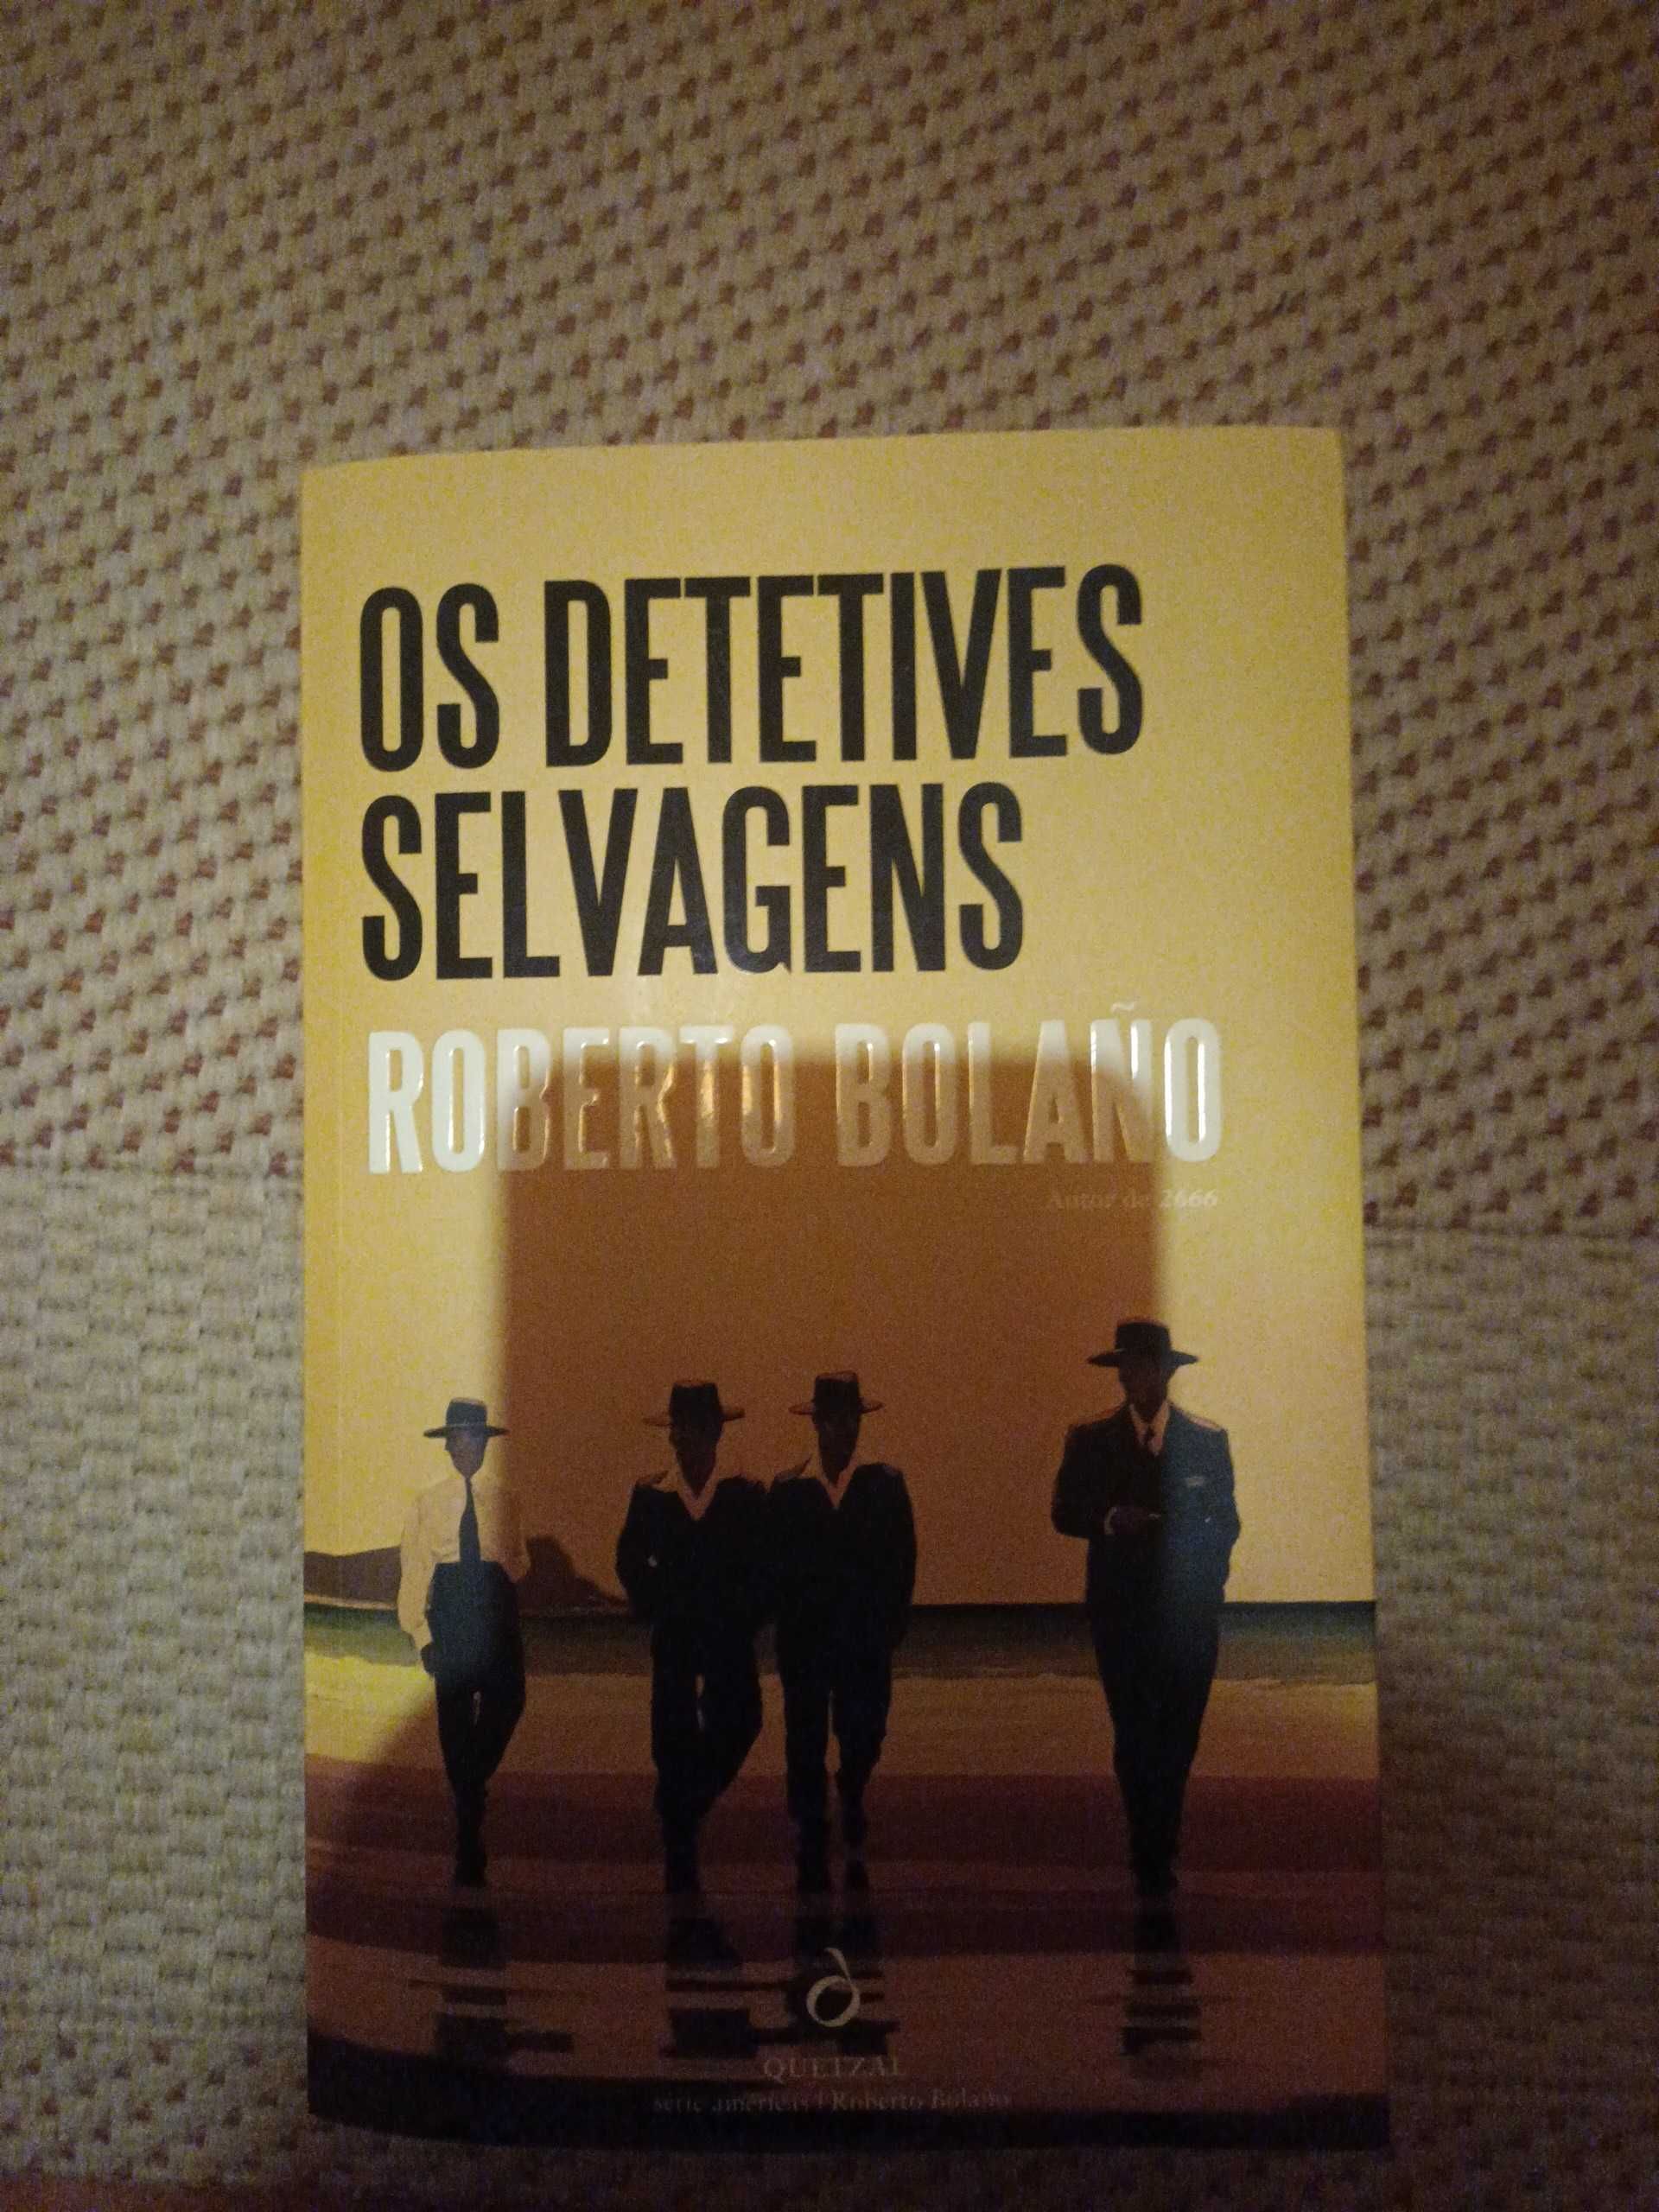 Livro "Os Detetives Selvagens" de Roberto Bolano